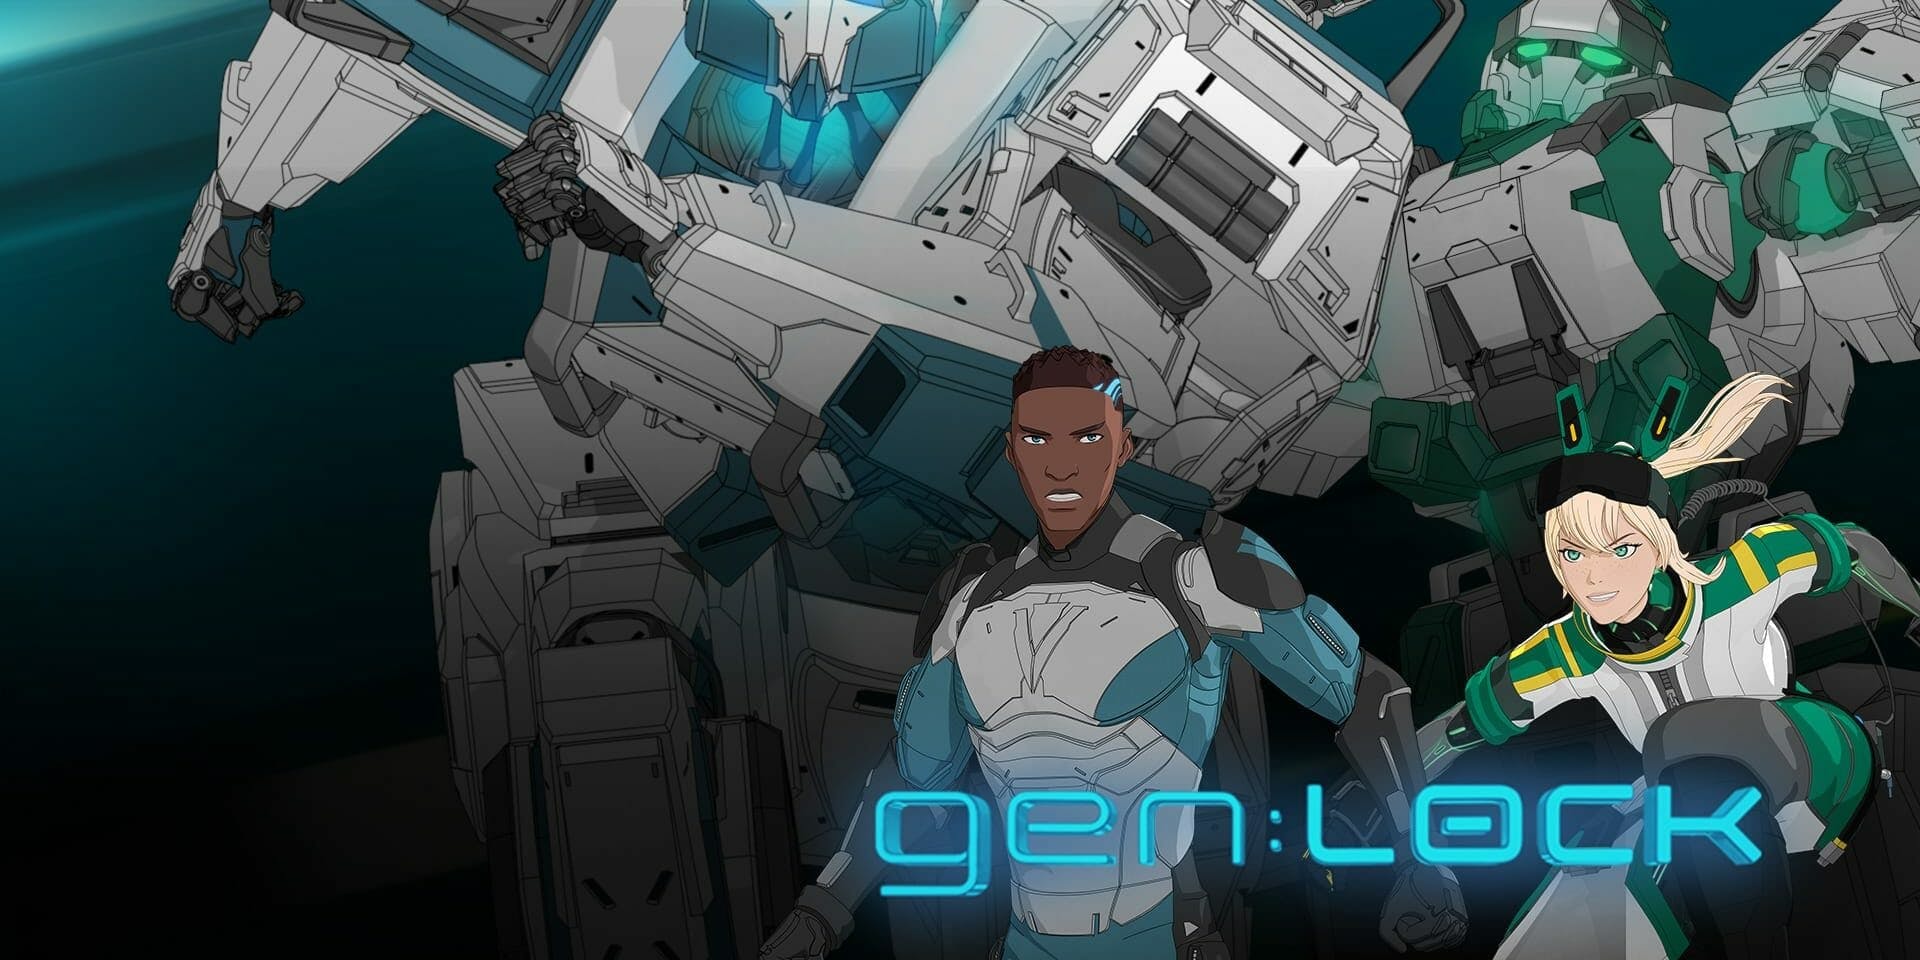 Michael B. Jordan to Star in Rooster Teeth 'gen:Lock' Anime Series